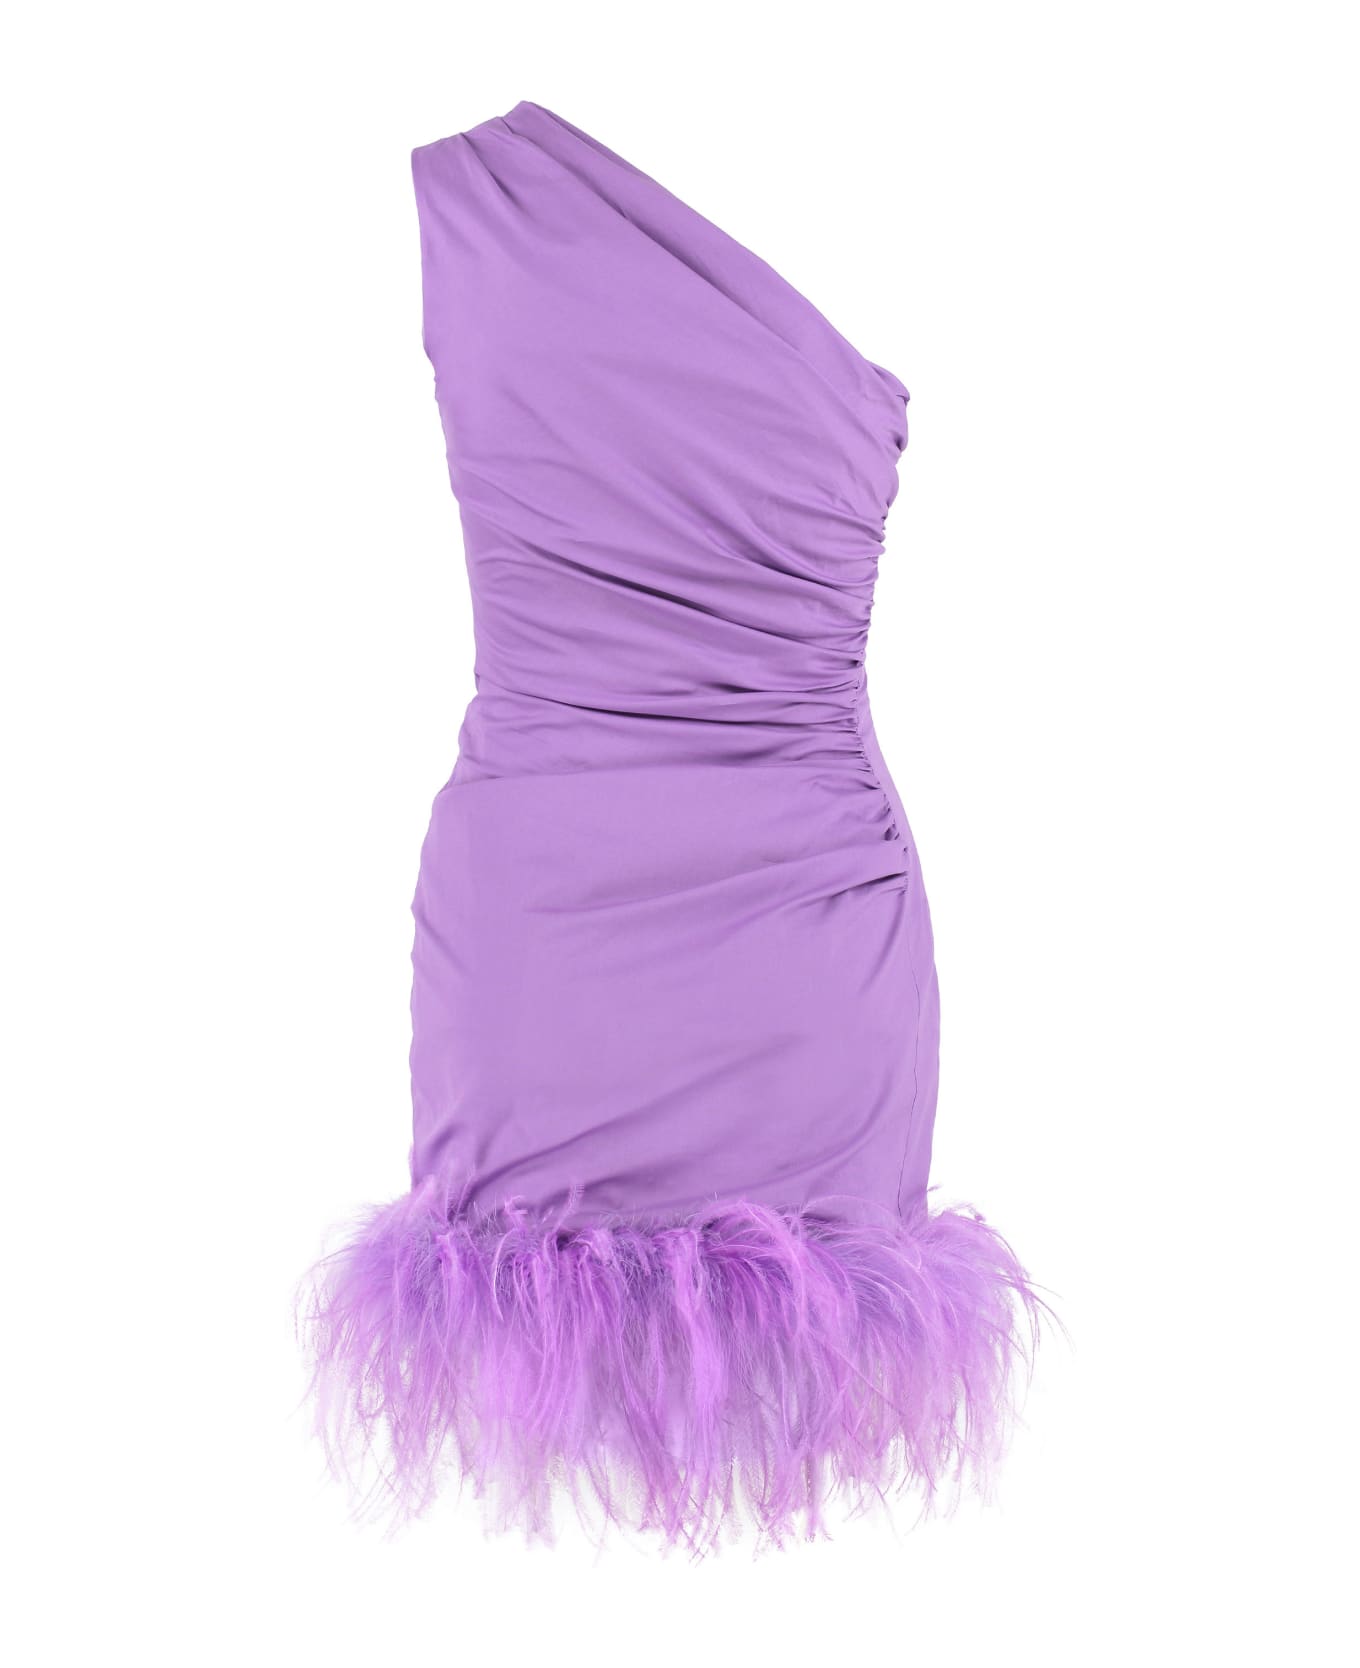 Giuseppe di Morabito One Shoulder Dress - purple